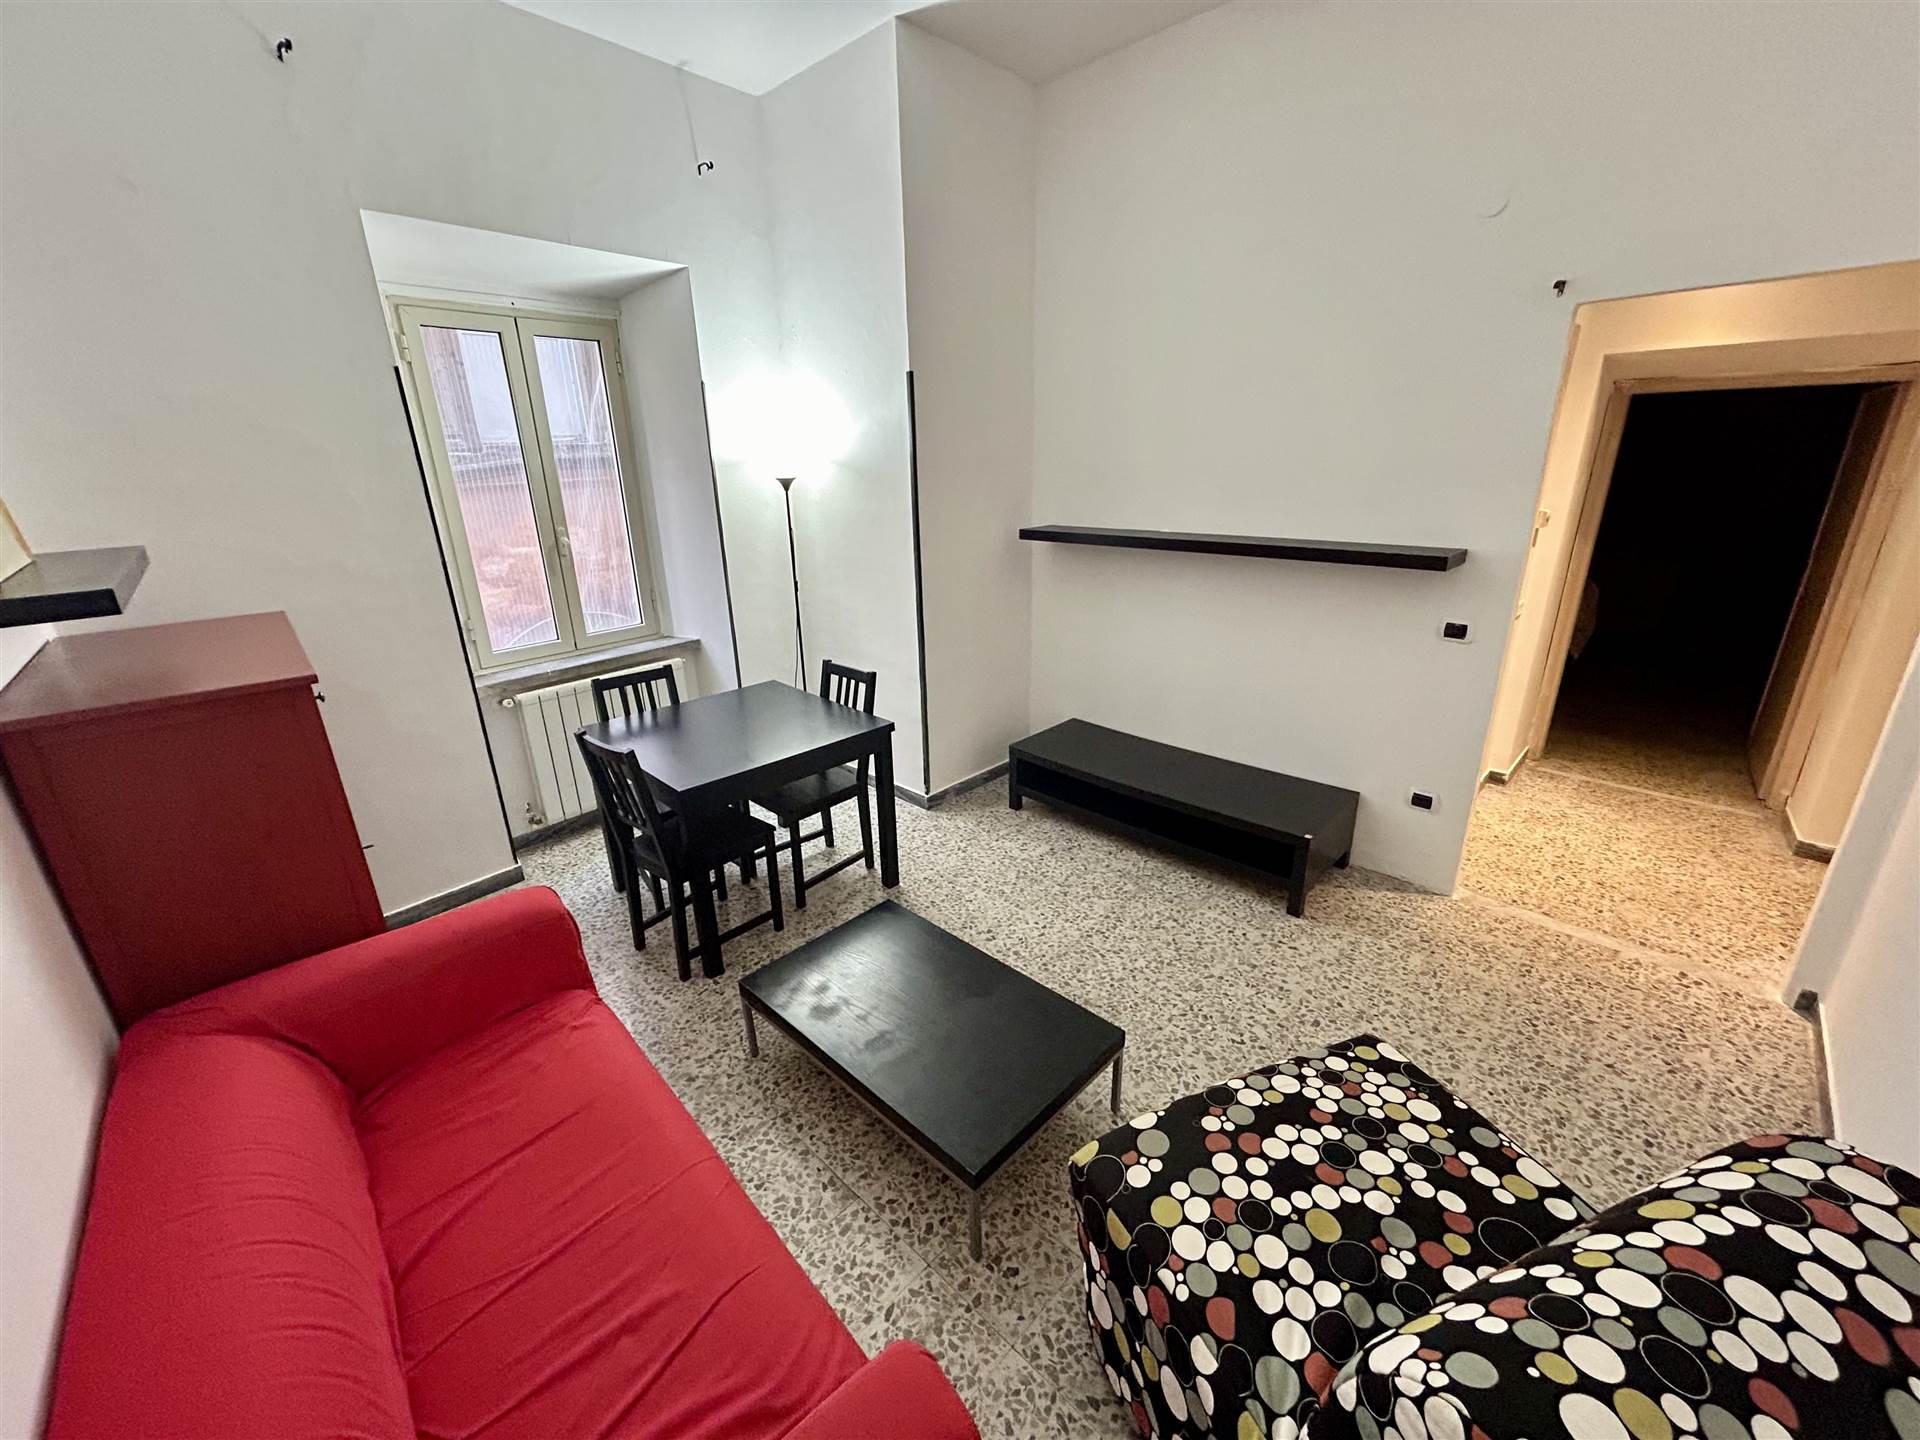 Appartamento in vendita a Tuscania, 4 locali, prezzo € 69.000 | PortaleAgenzieImmobiliari.it